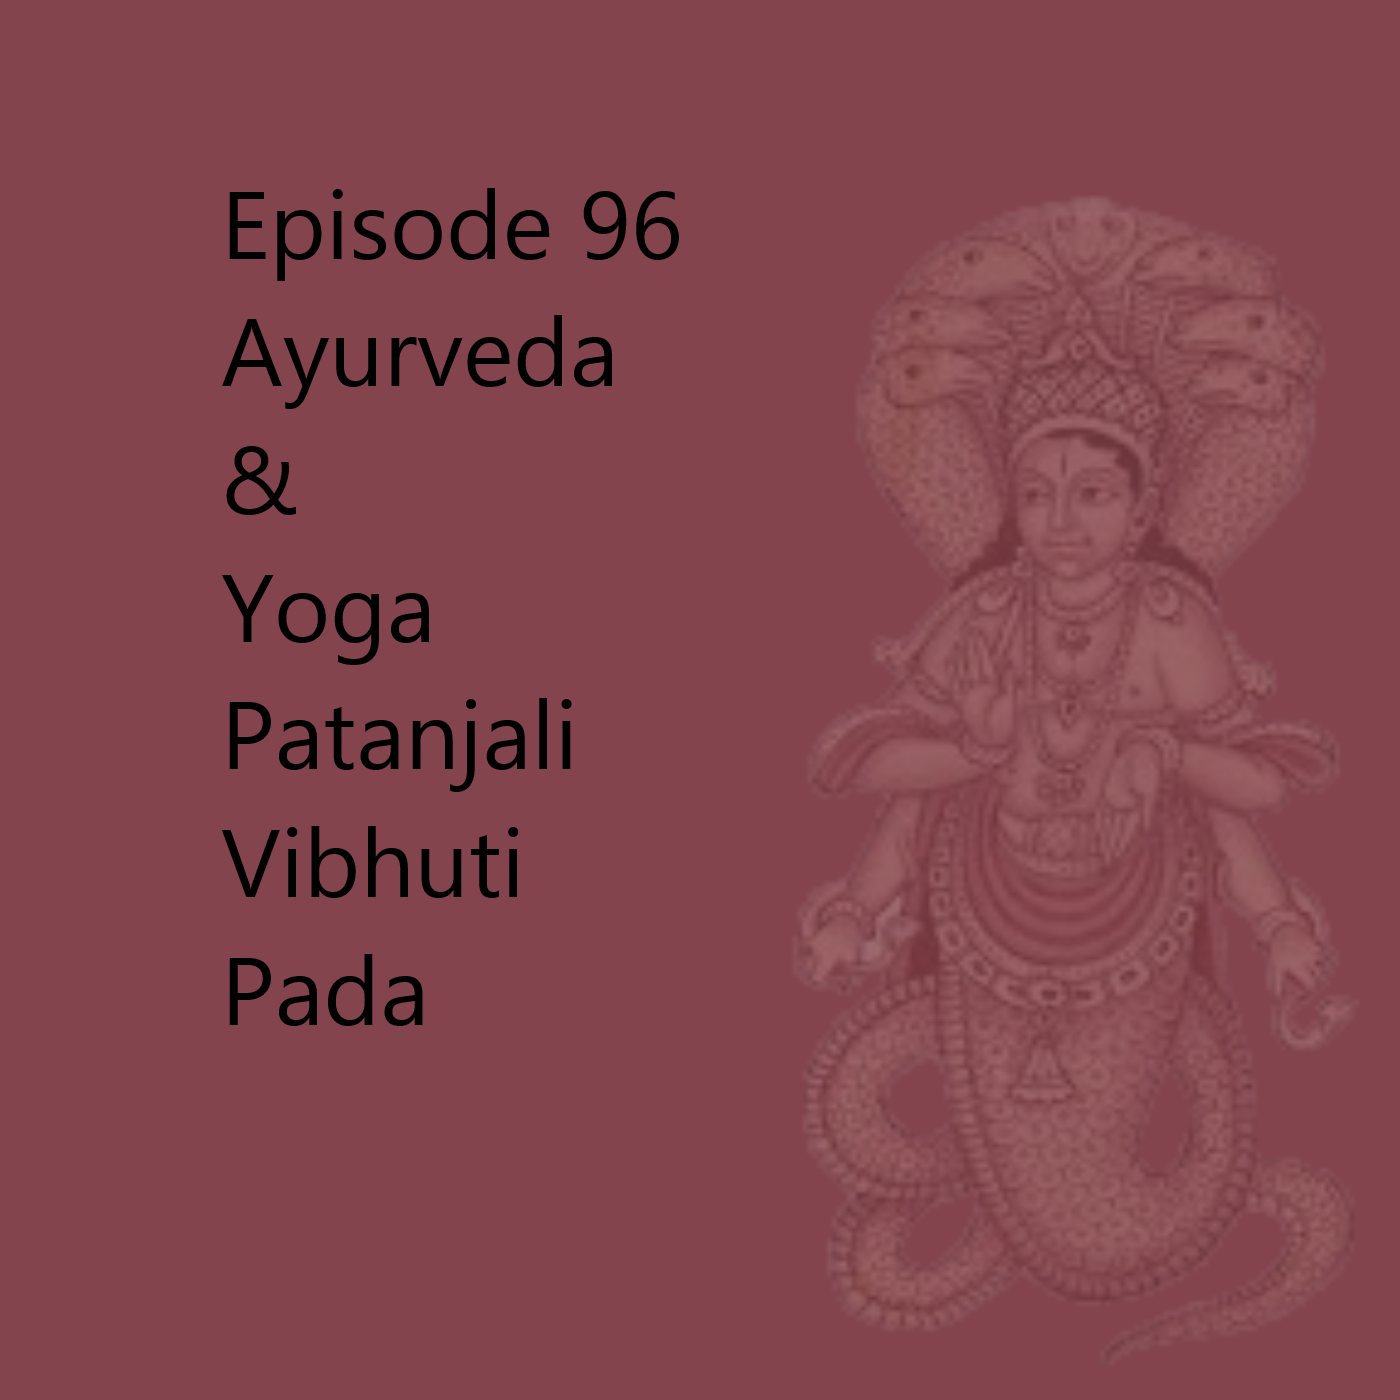 Episode 96 Patanjali Vibhuti Pada